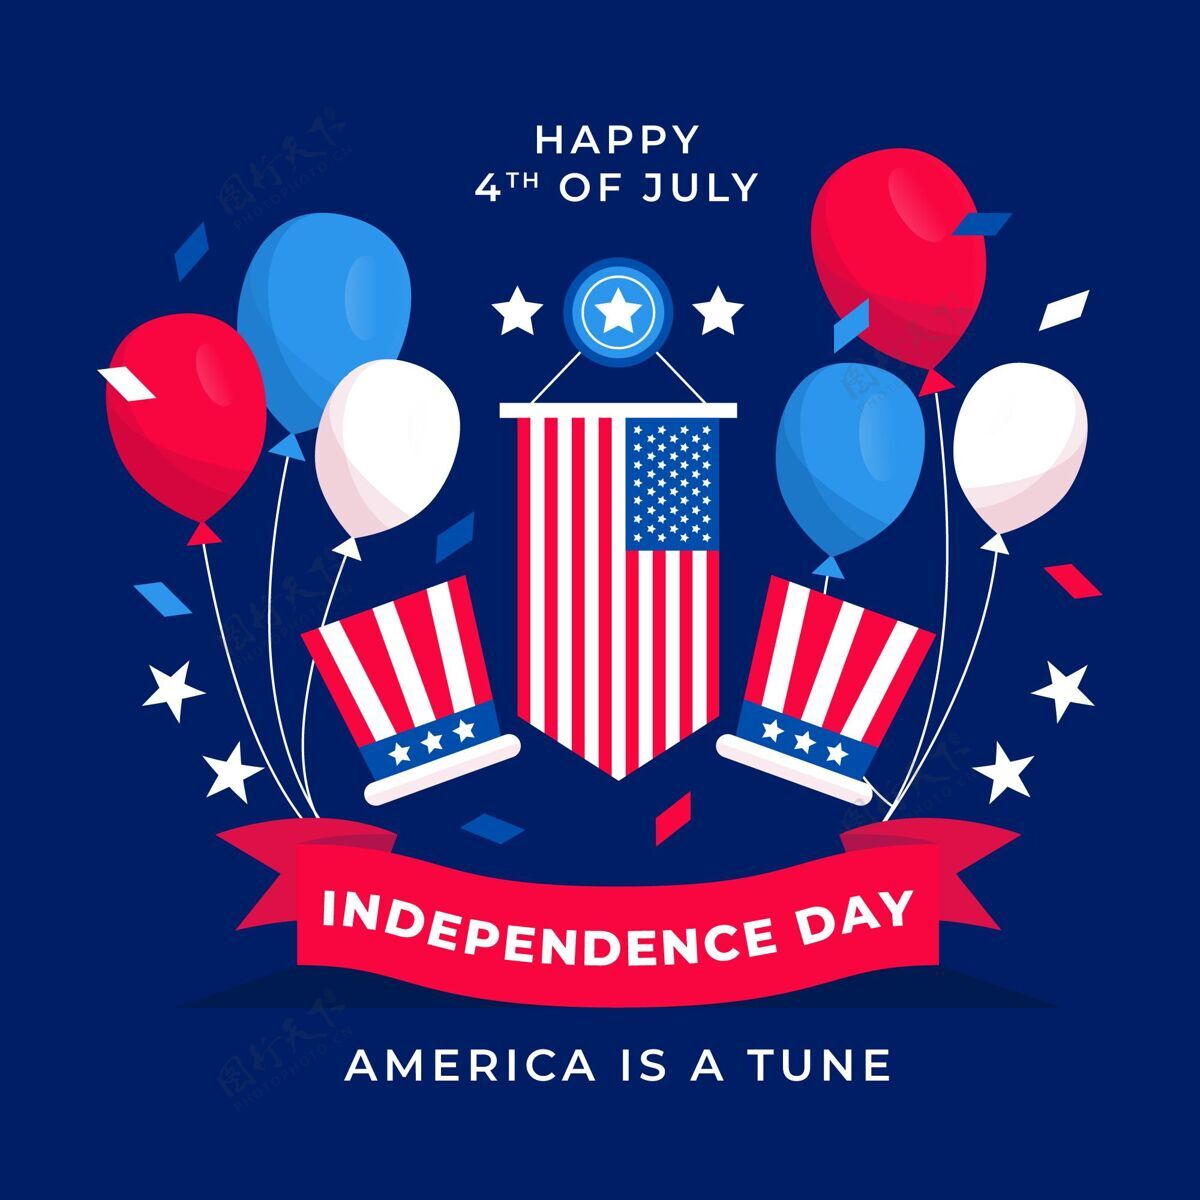 独立日七月四日-独立日插画美国爱国独立日快乐